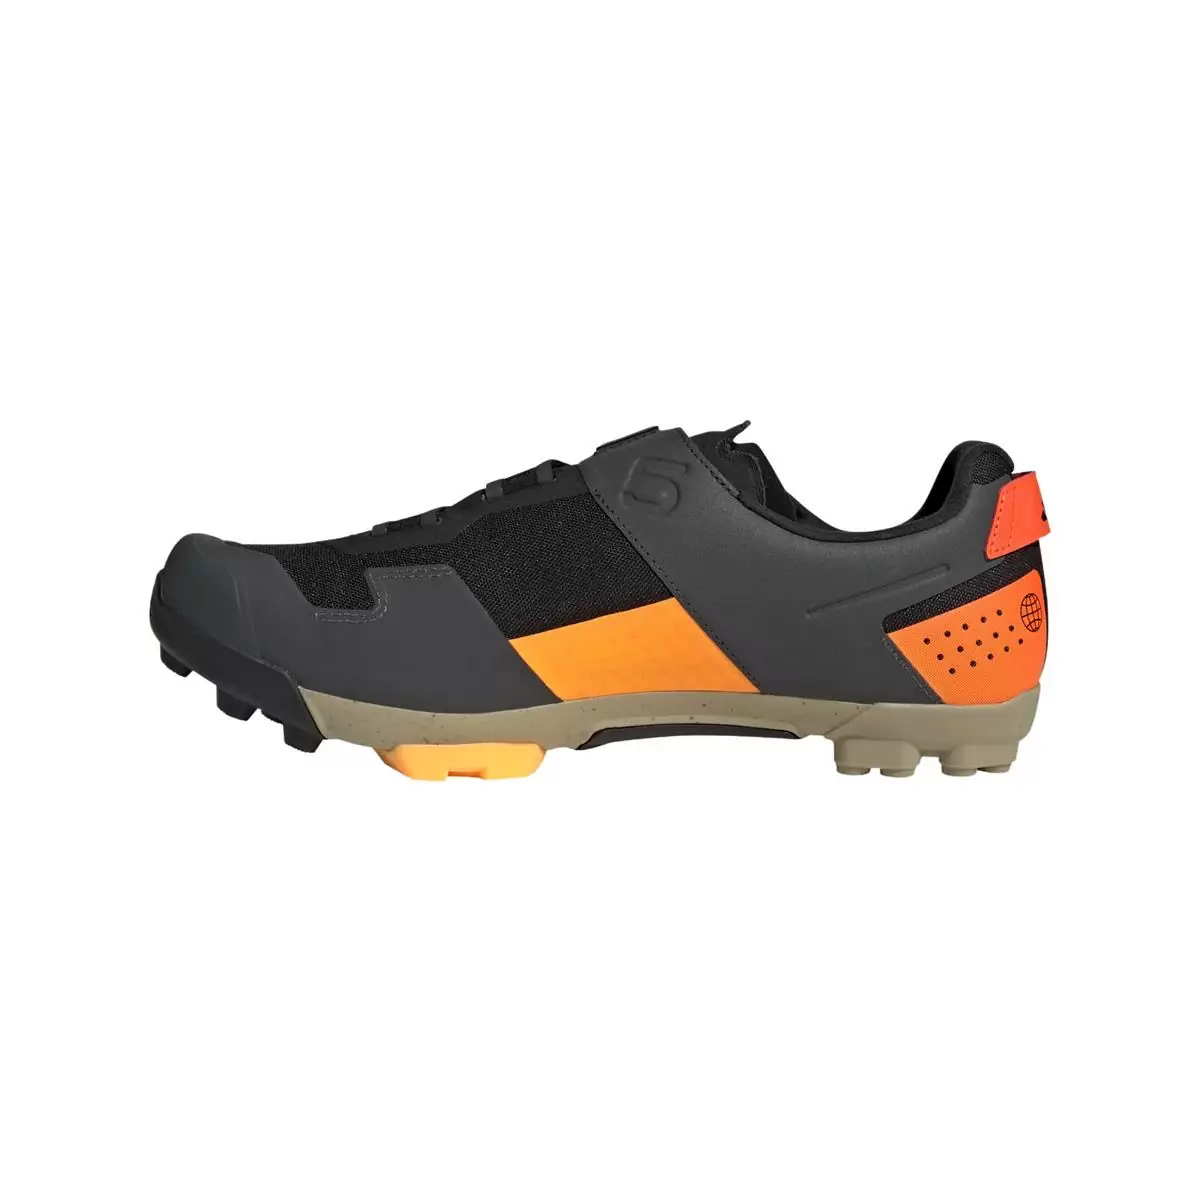 Clip 5.10 Kestrel Boa MTB Shoes Black/Orange Size 45 #2